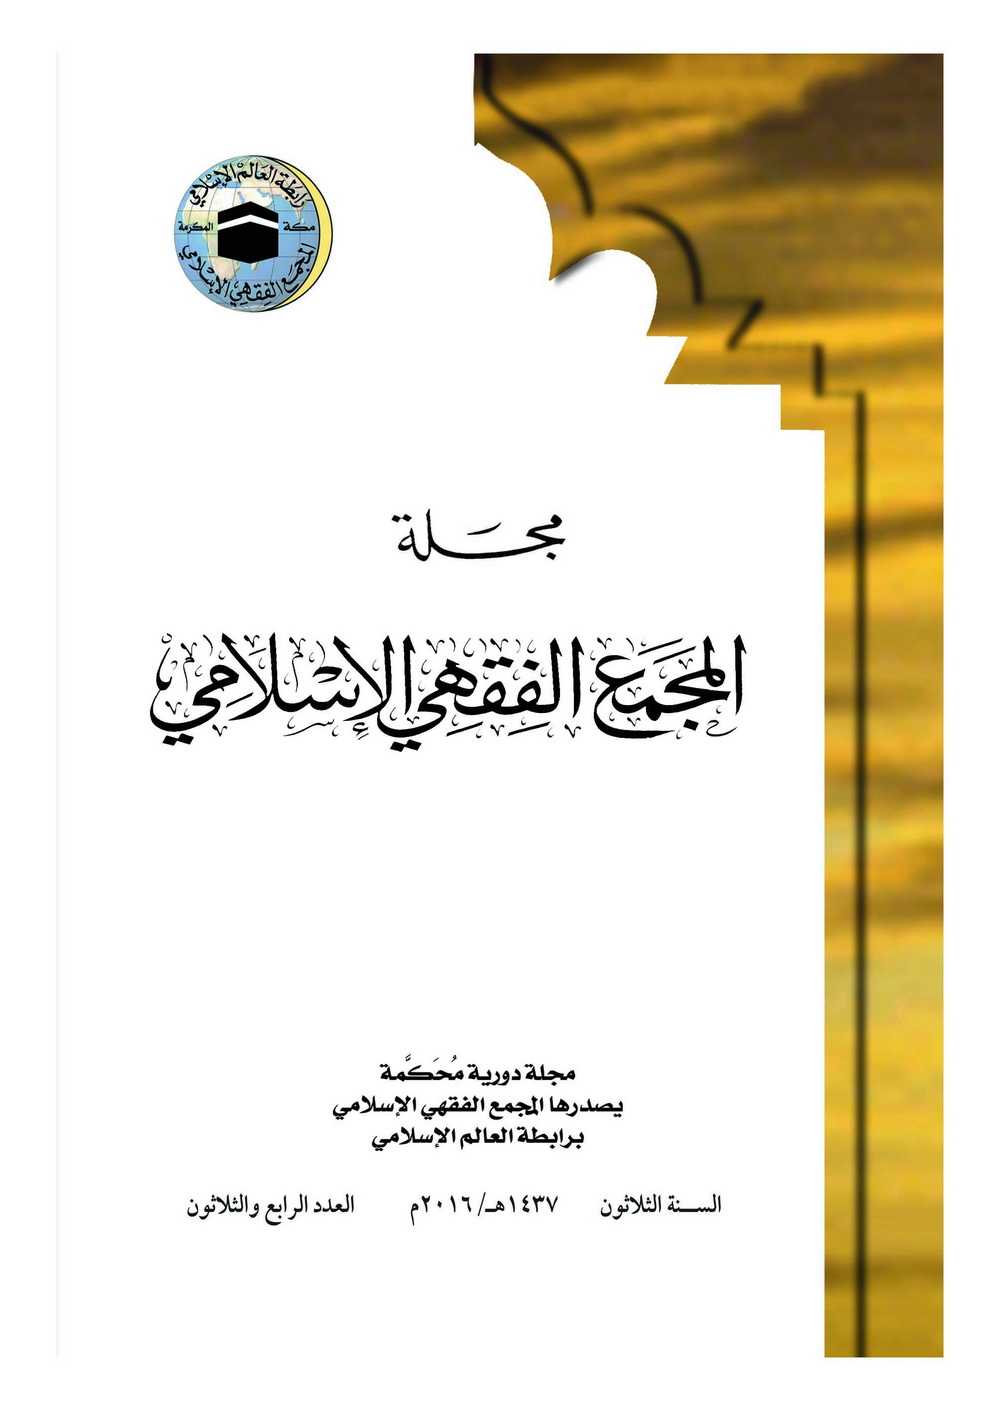 مجلة المجمع الفقهي الإسلامي - الأعداد السابقة  Magazine-islamic-fiqh-counsil-34